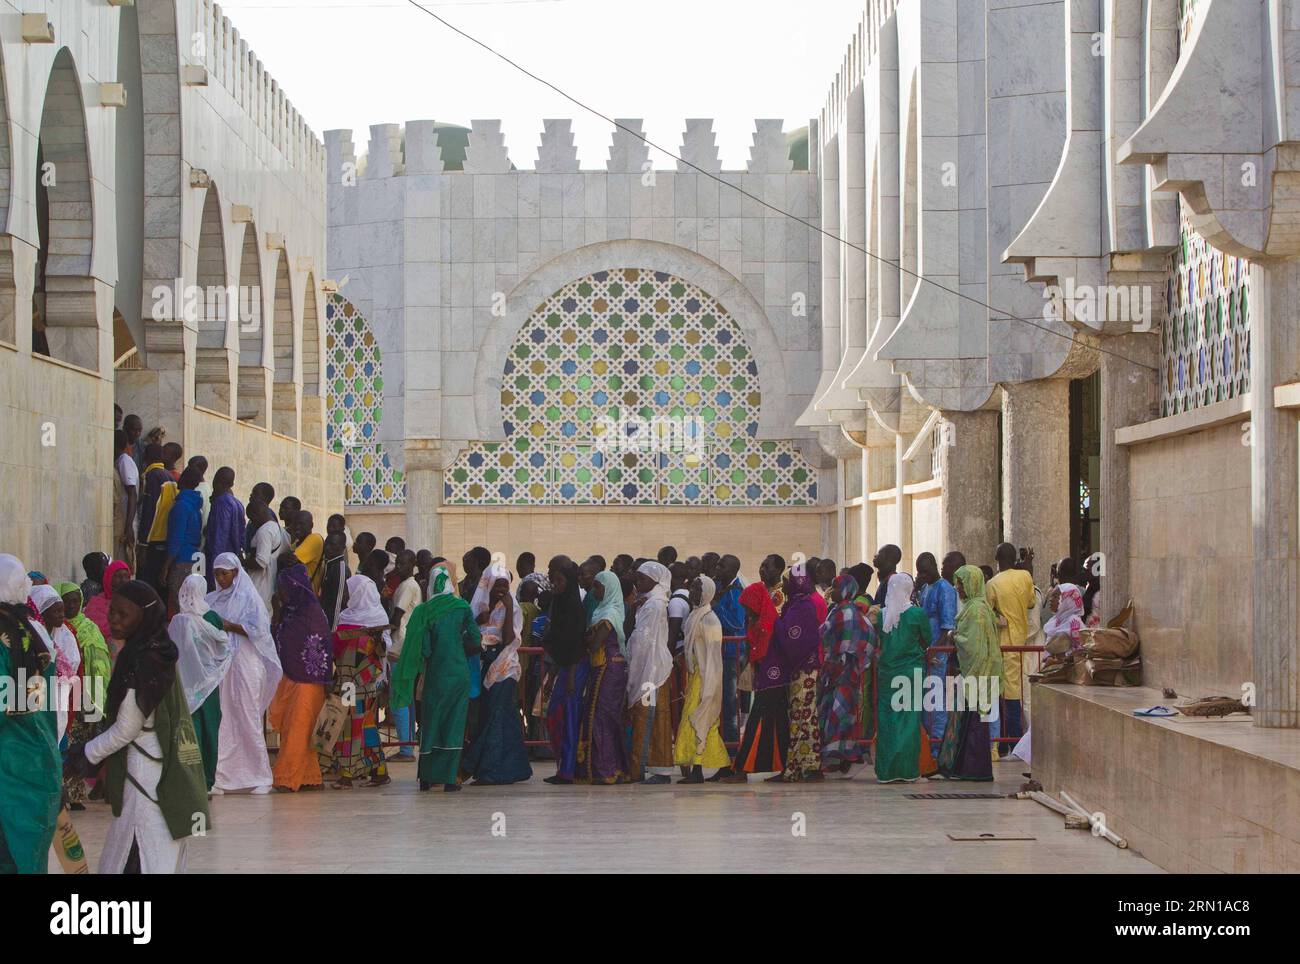 (141211) -- TOUBA, le 11 décembre 2014 -- des pèlerins visitent la tombe d Amadou Bamba, fondateur du Mouride, à la Grande Mosquée de Touba, ville sainte du Sénégal, le 11 décembre 2014. Les Sénégalais ont célébré jeudi la fête du Grand Magal, un pèlerinage annuel qui devrait attirer plus de 2 millions de fidèles Mouride en Afrique de l'Ouest et dans le monde. SÉNÉGAL-TOUBA-GRAND MAGAL-CELEBRATION LixJing PUBLICATIONxNOTxINxCHN Touba DEC 11 2014 pèlerins visitent la tombe d'Amadou Bamba le fondateur de la Grande Mosquée de Touba Sénégal S ville Sainte DEC 11 2014 Sénégalais a célébré le Fe Banque D'Images